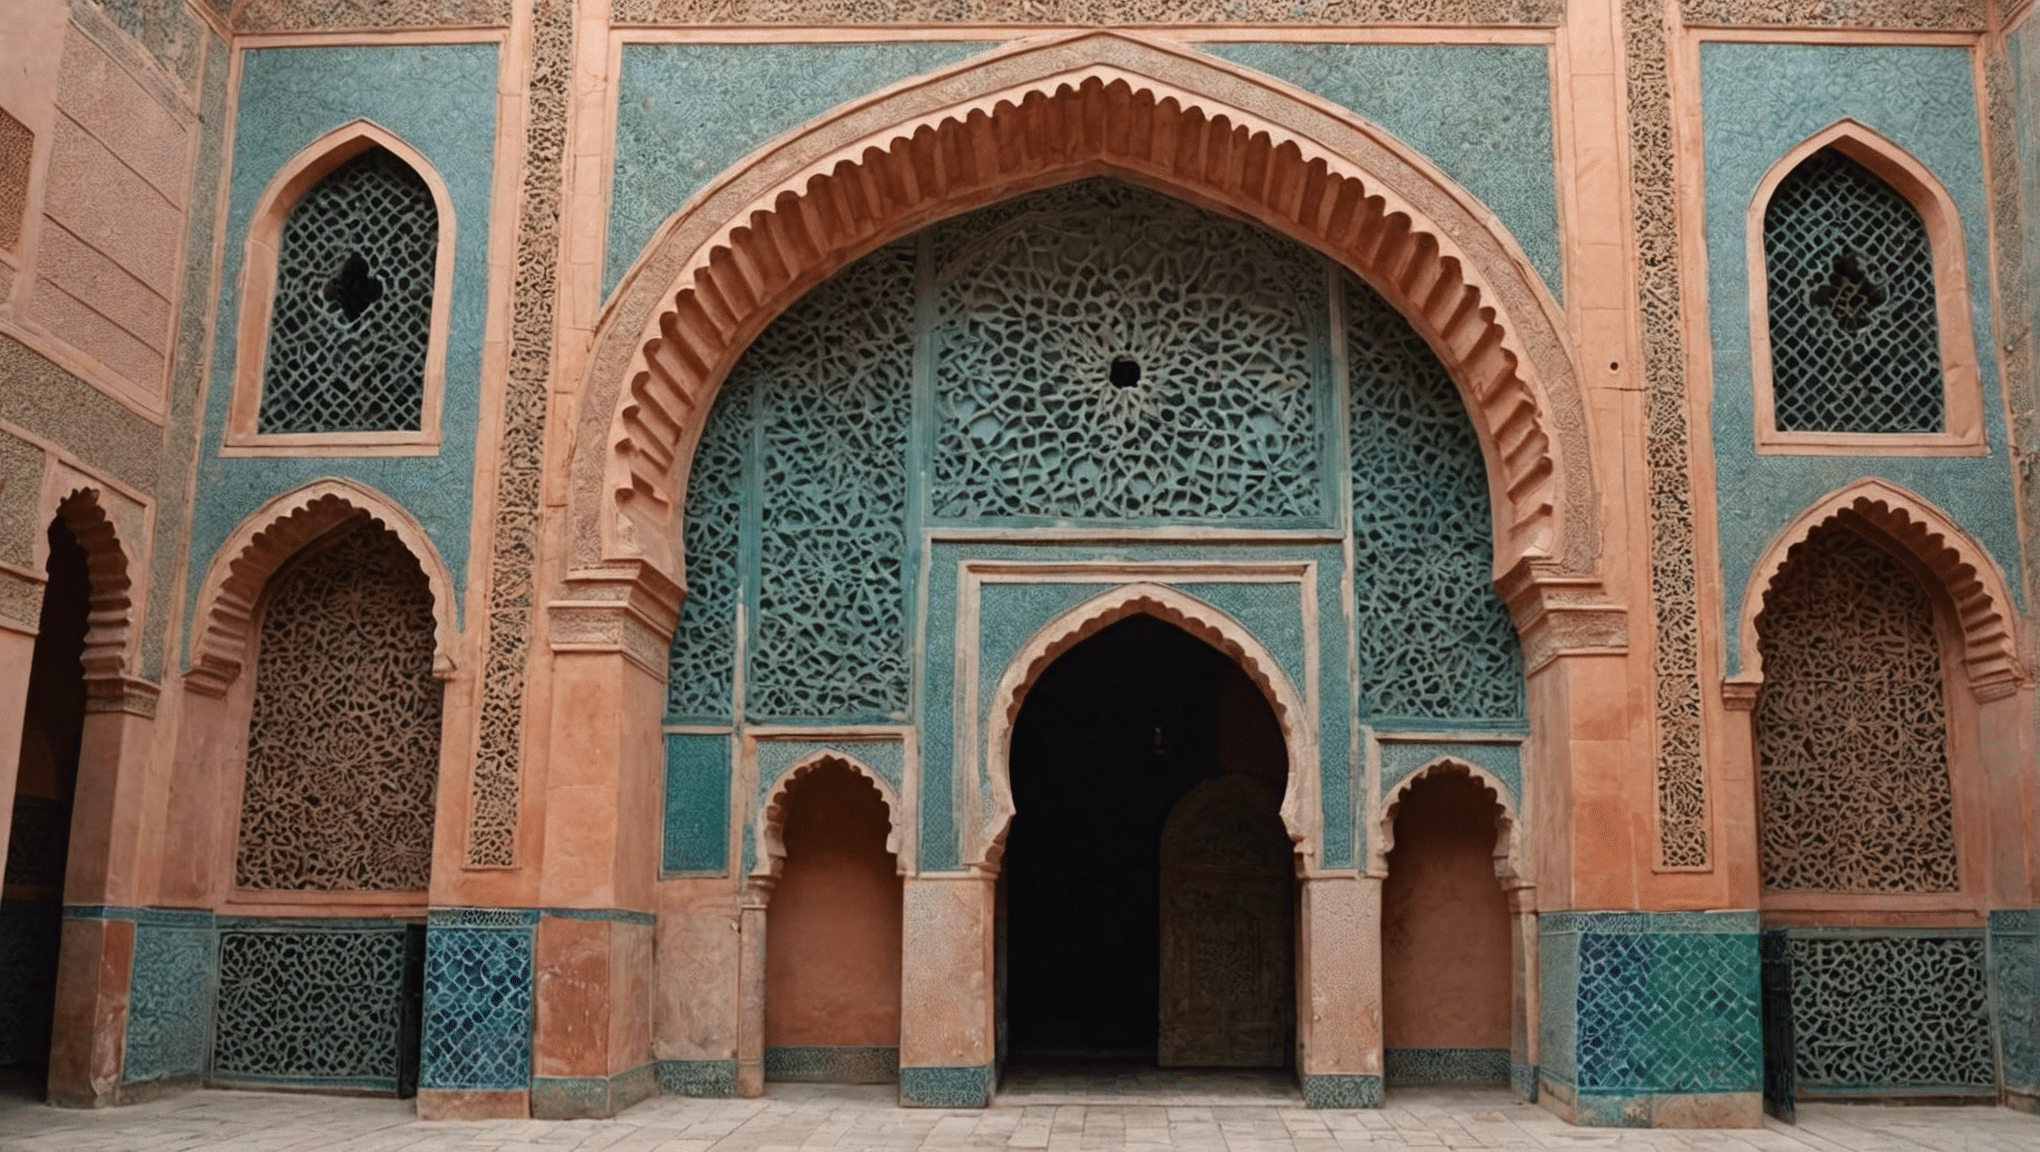 découvrez le tarif d'entrée aux tombeaux saadiens et profitez au maximum de votre visite de ce site historique de marrakech.